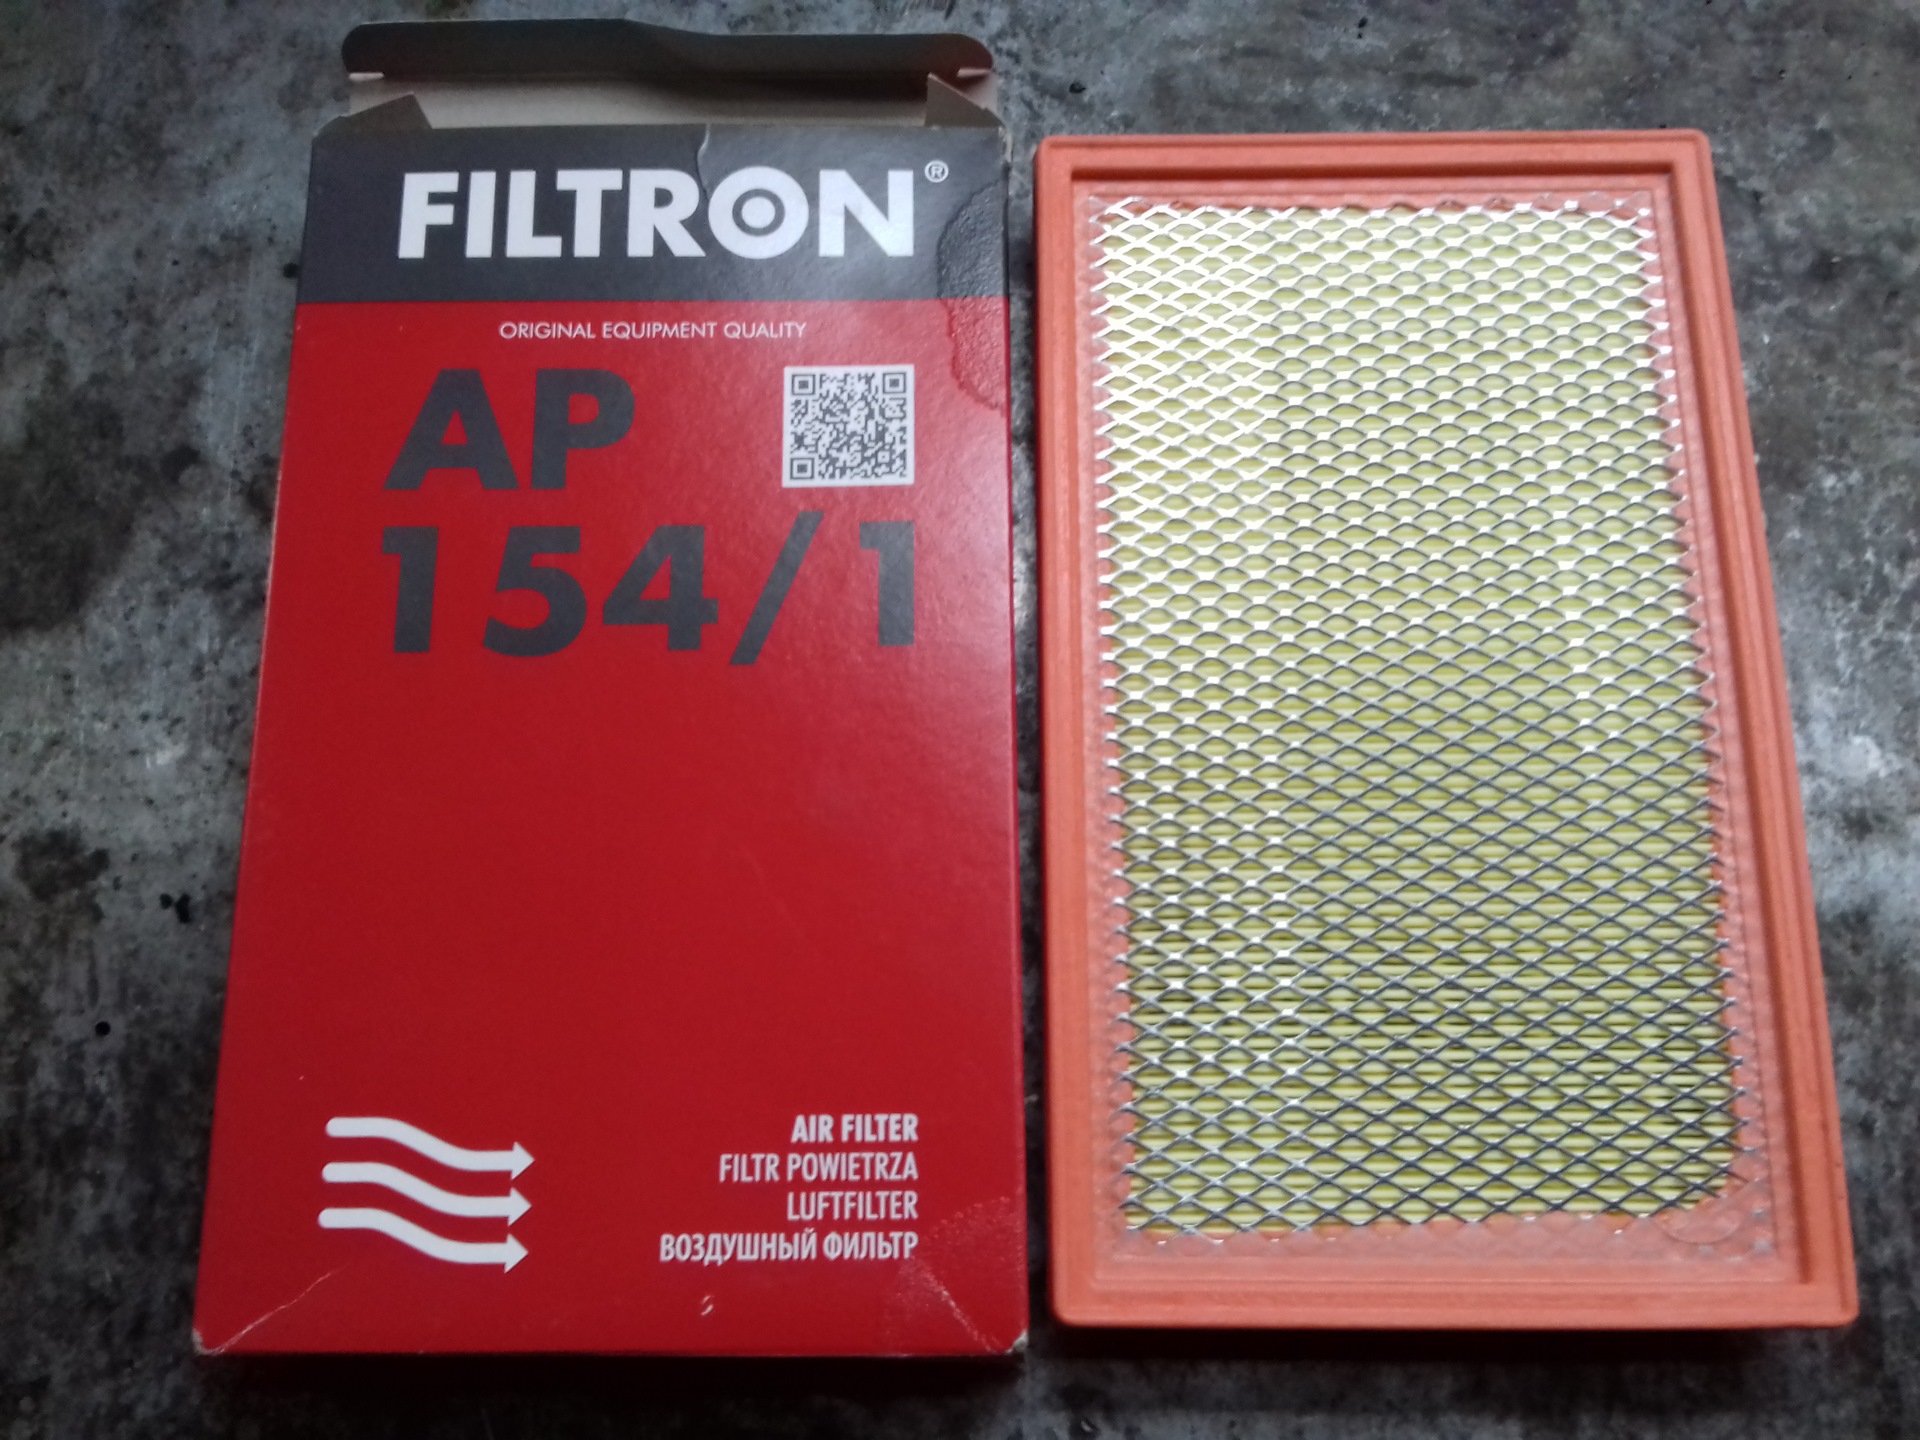 Ap фильтр воздушный. Воздушный фильтр Фильтрон ар 154. FILTRON AP 154/1 фильтр воздушный. Фильтрон ap1541. FILTRON ap154/1.